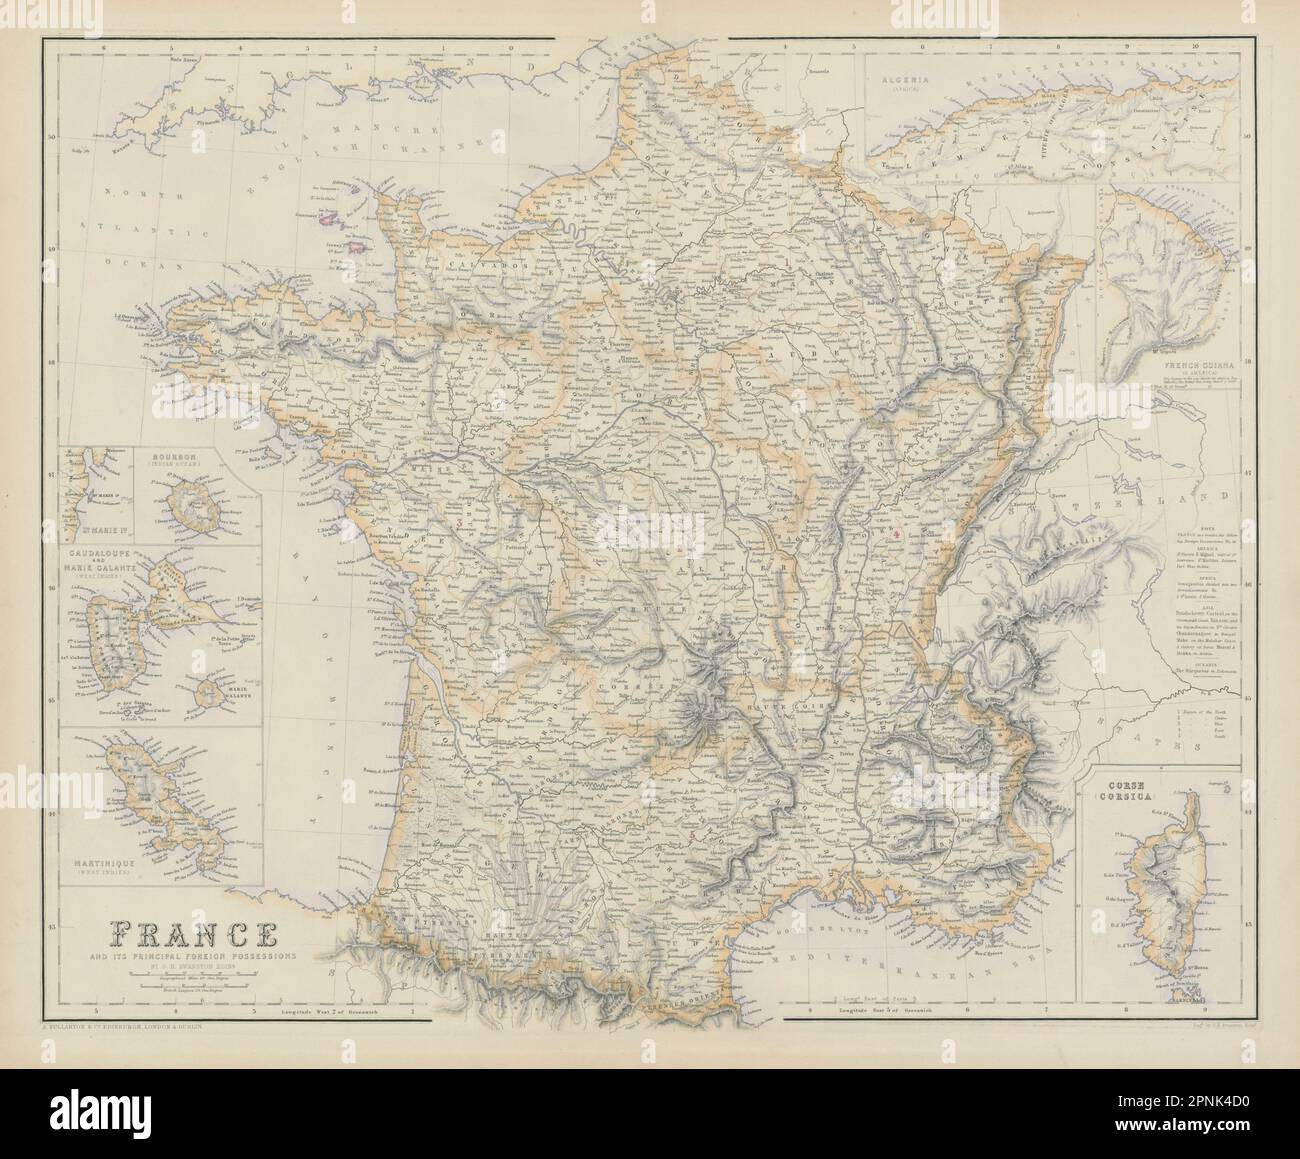 Frankreich und wichtigster ausländischer Besitz. Guadaloupe Martinique. SWANSTON 1860 Karte Stockfoto